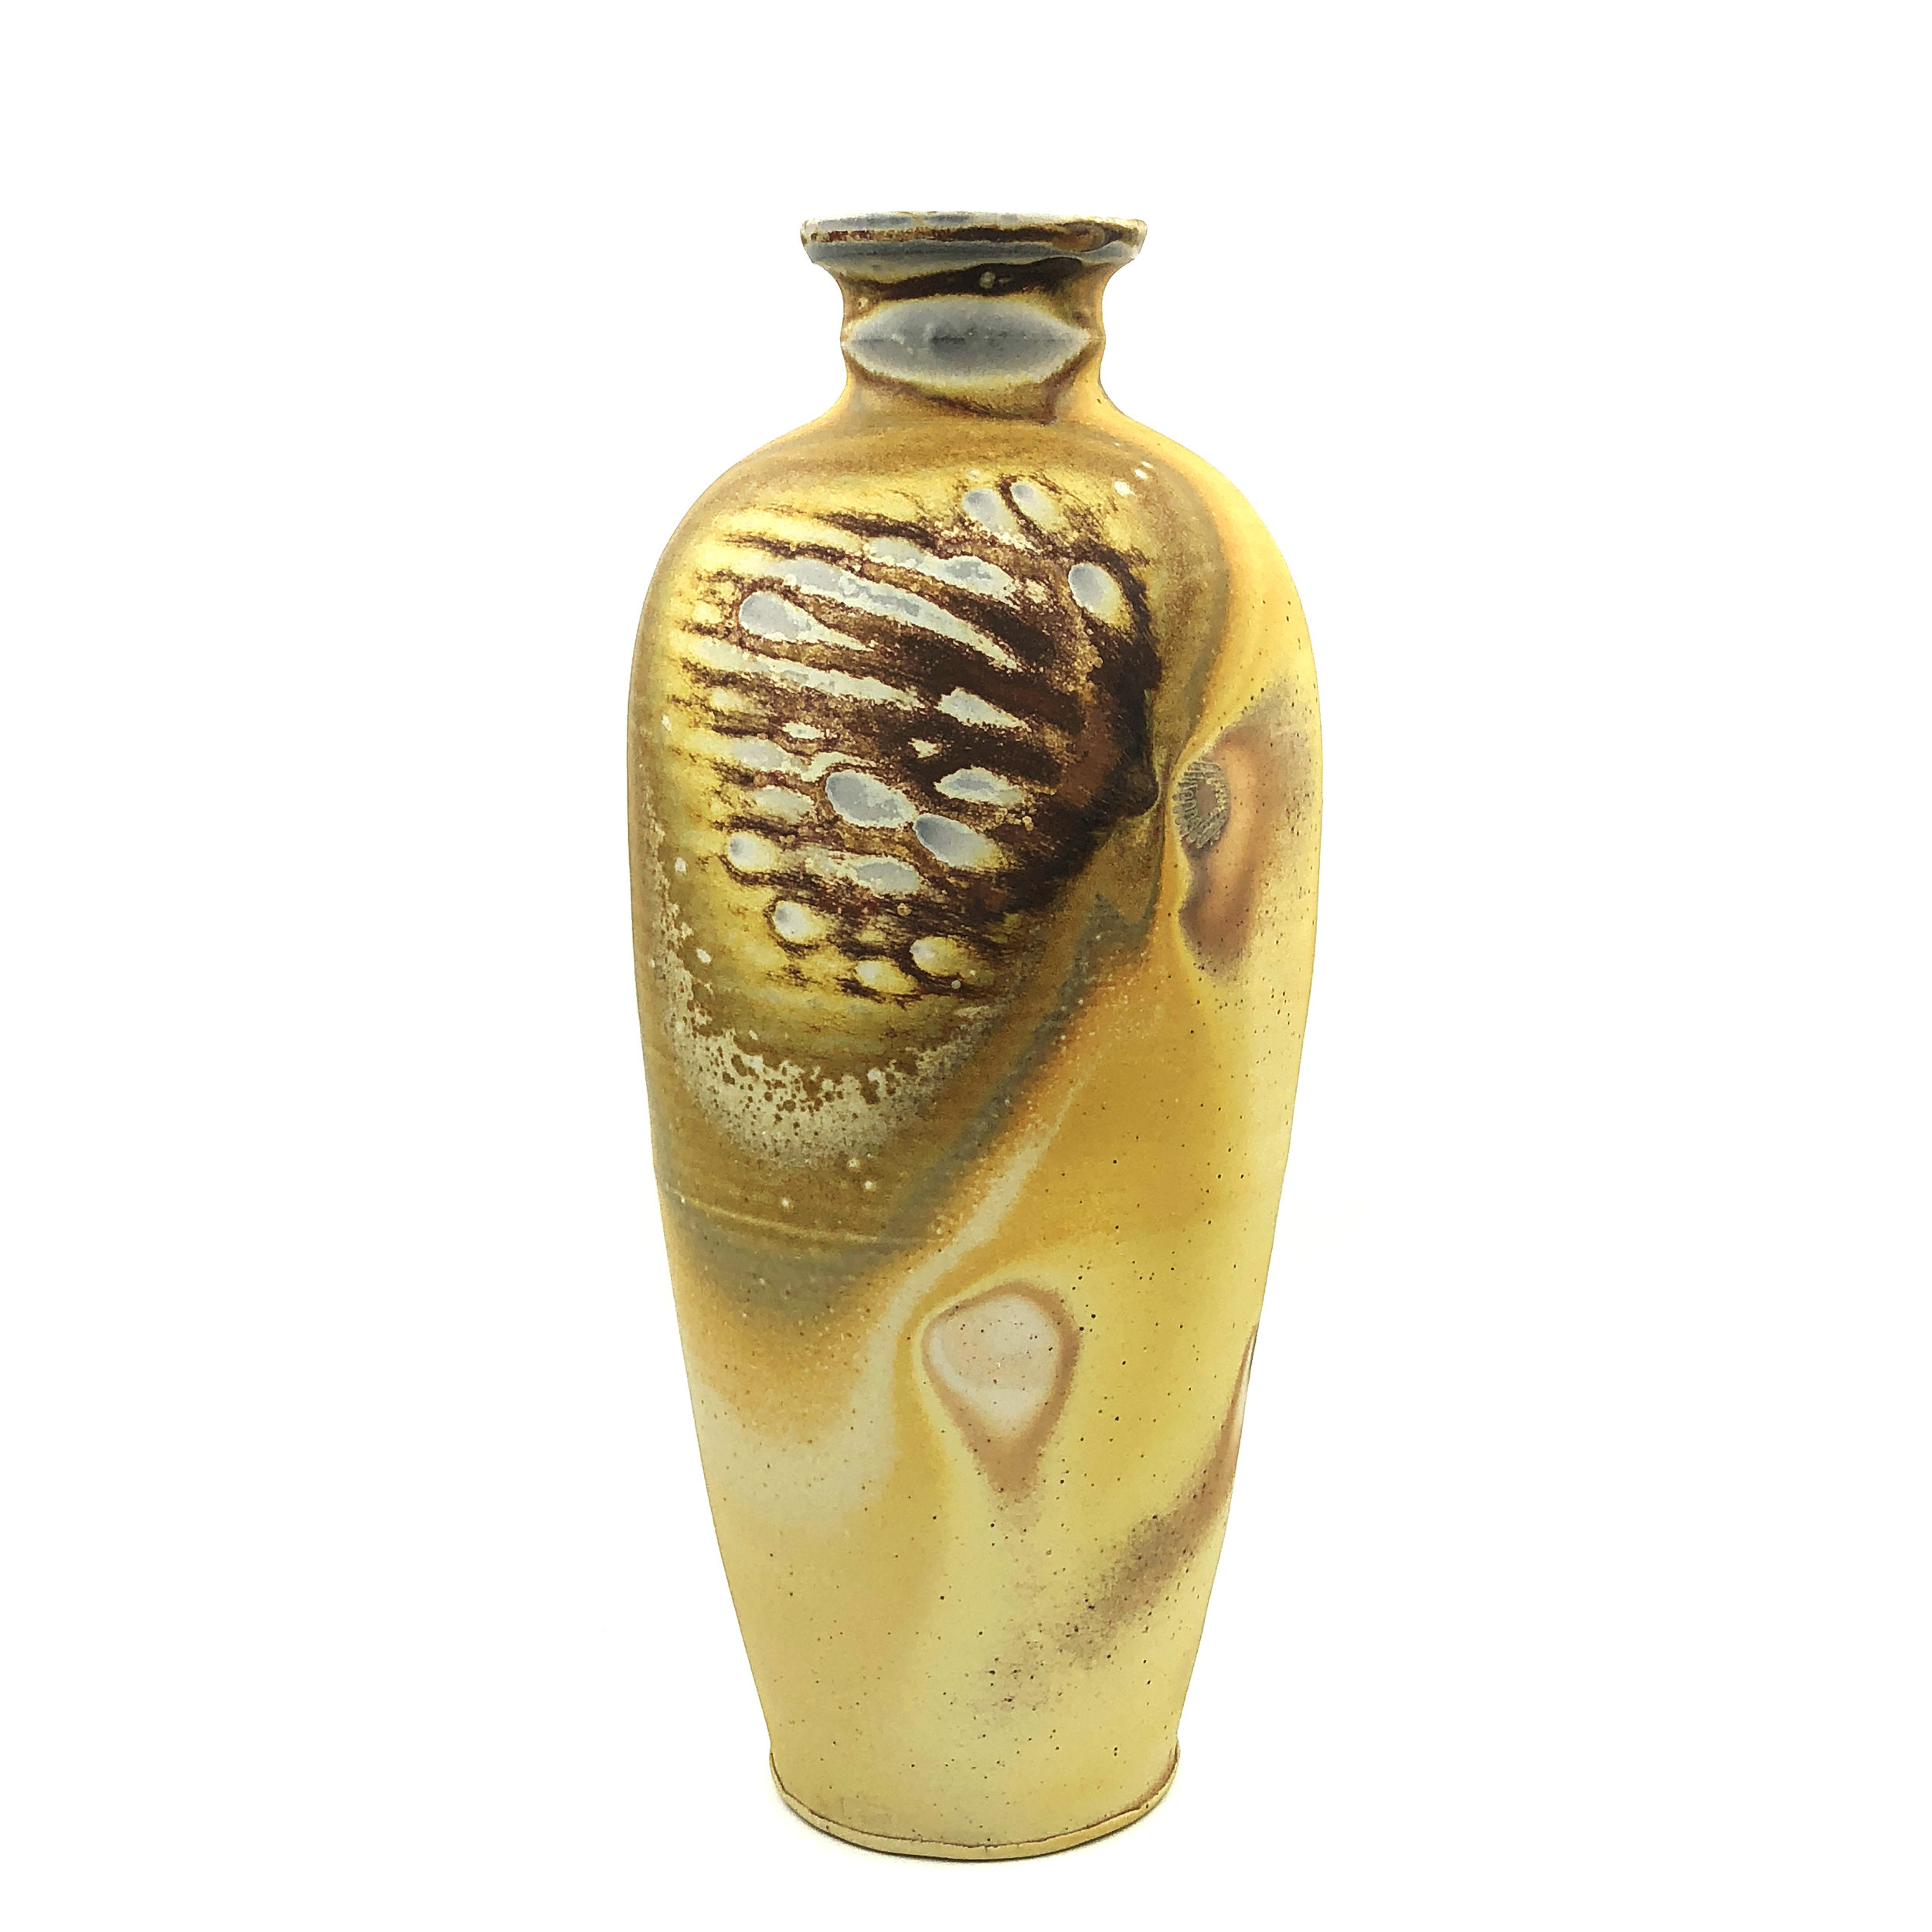   Vase,  soda fired stoneware, 2018 